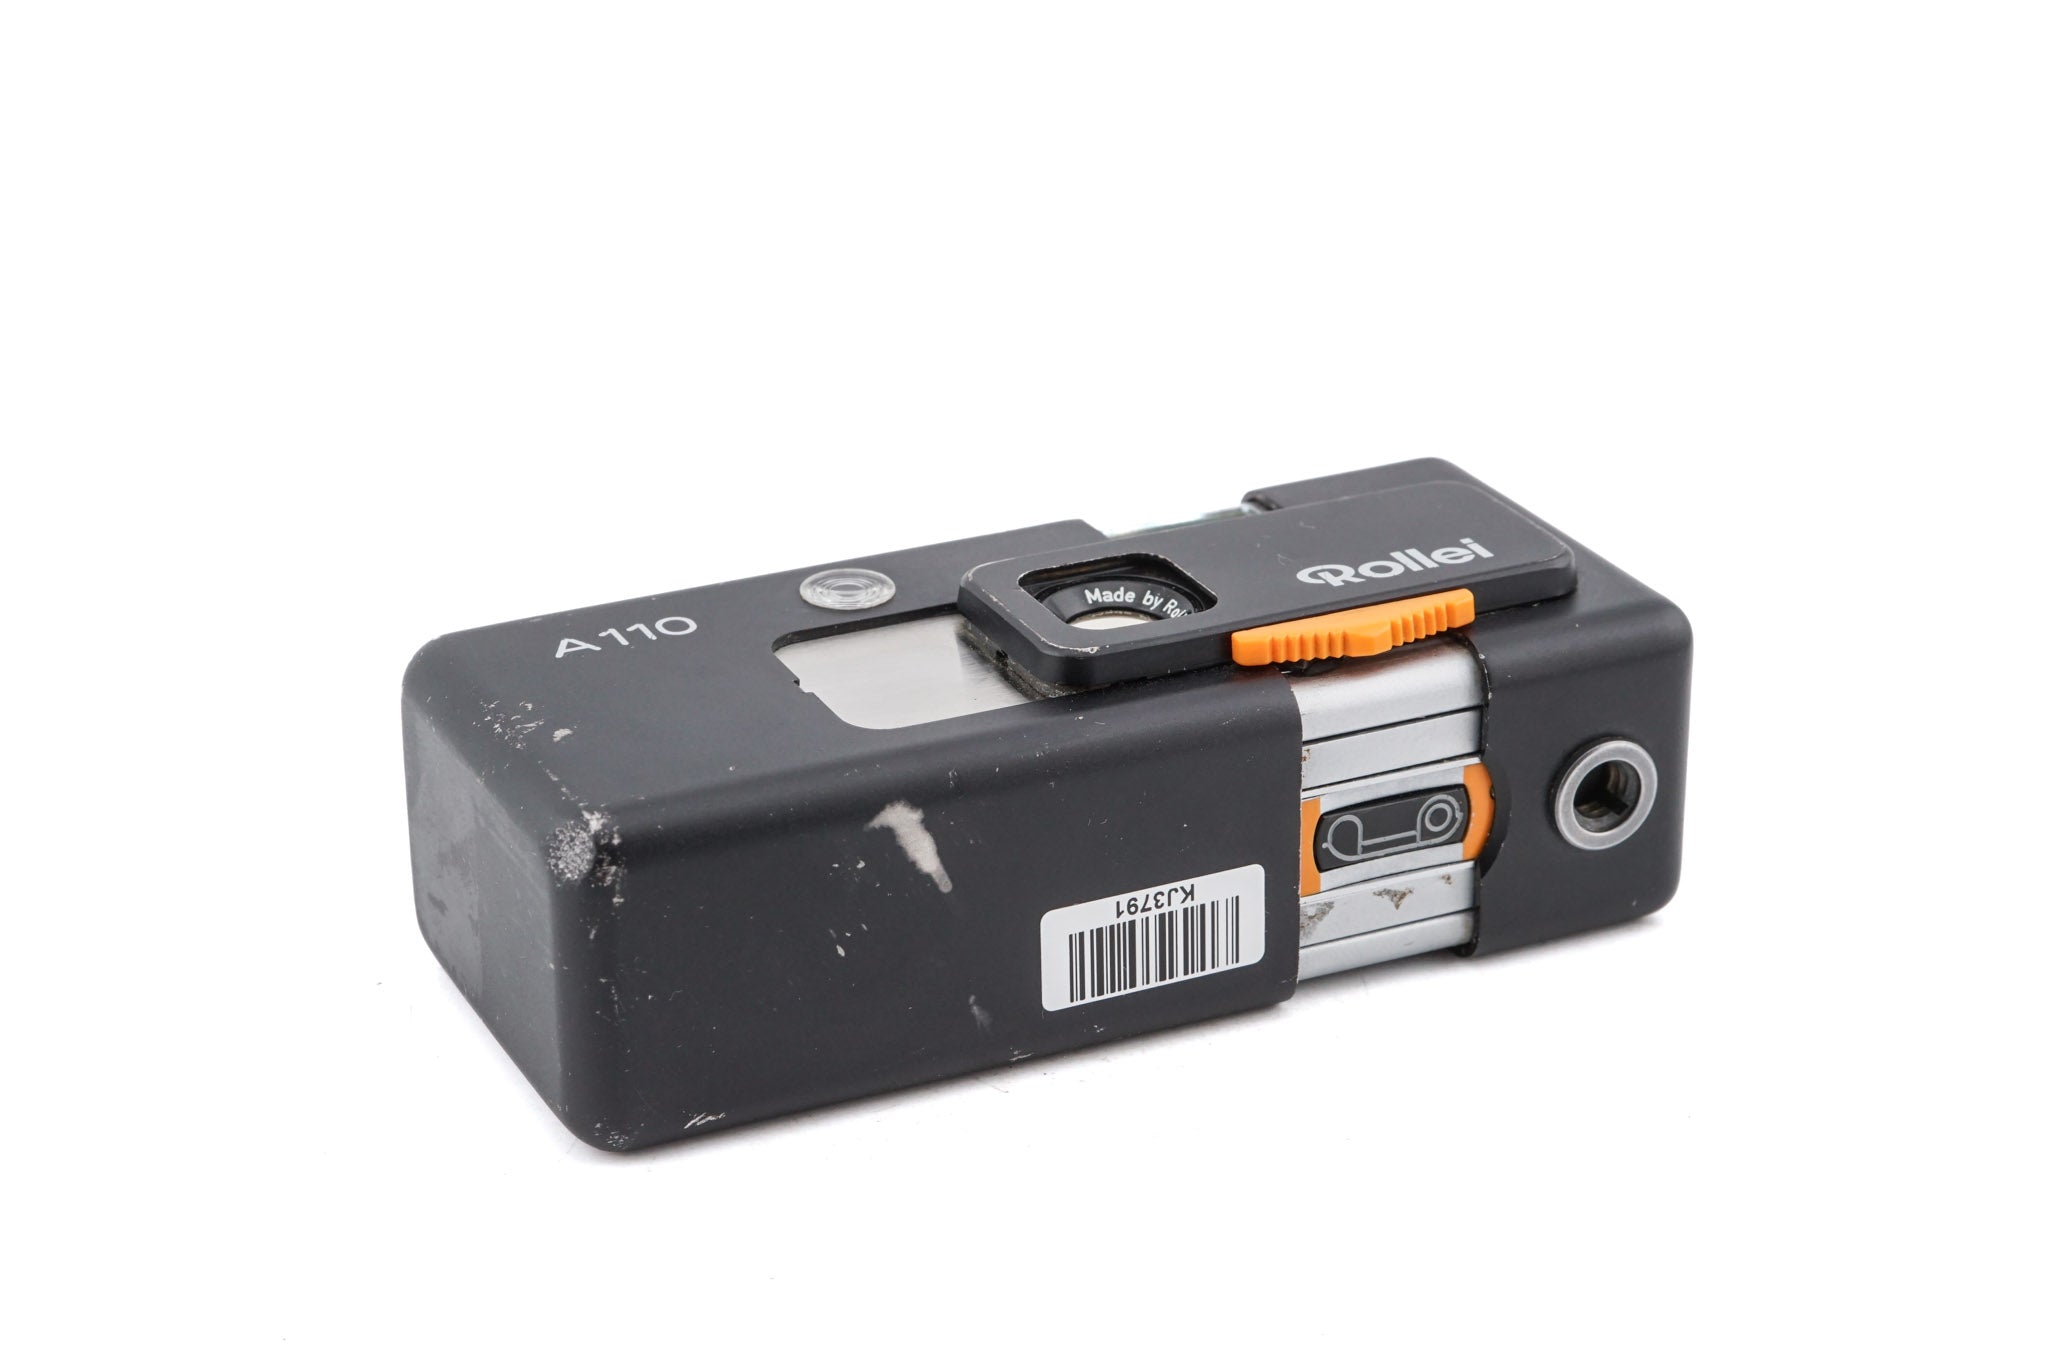 Rollei A110 – Kamerastore